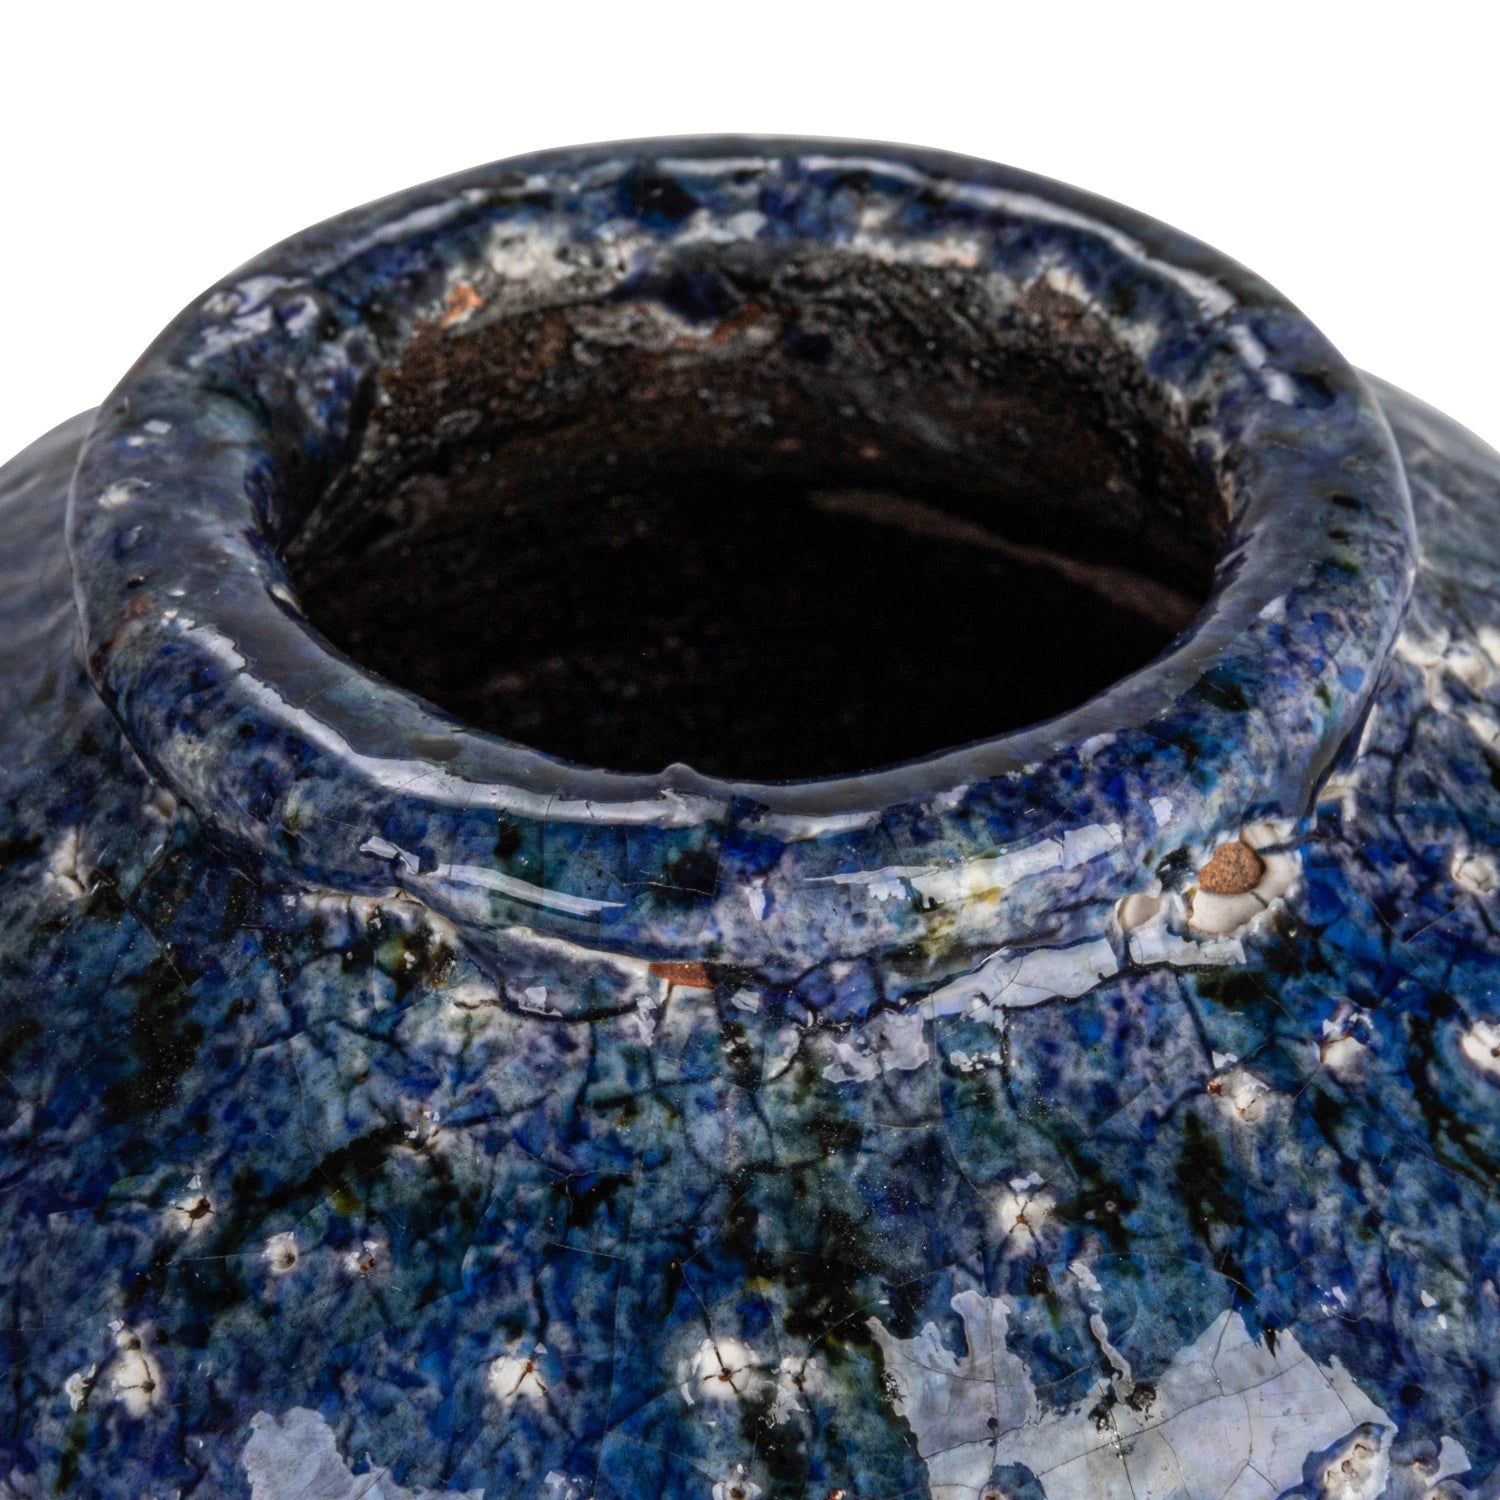 Decorative Terra-Cotta Vase